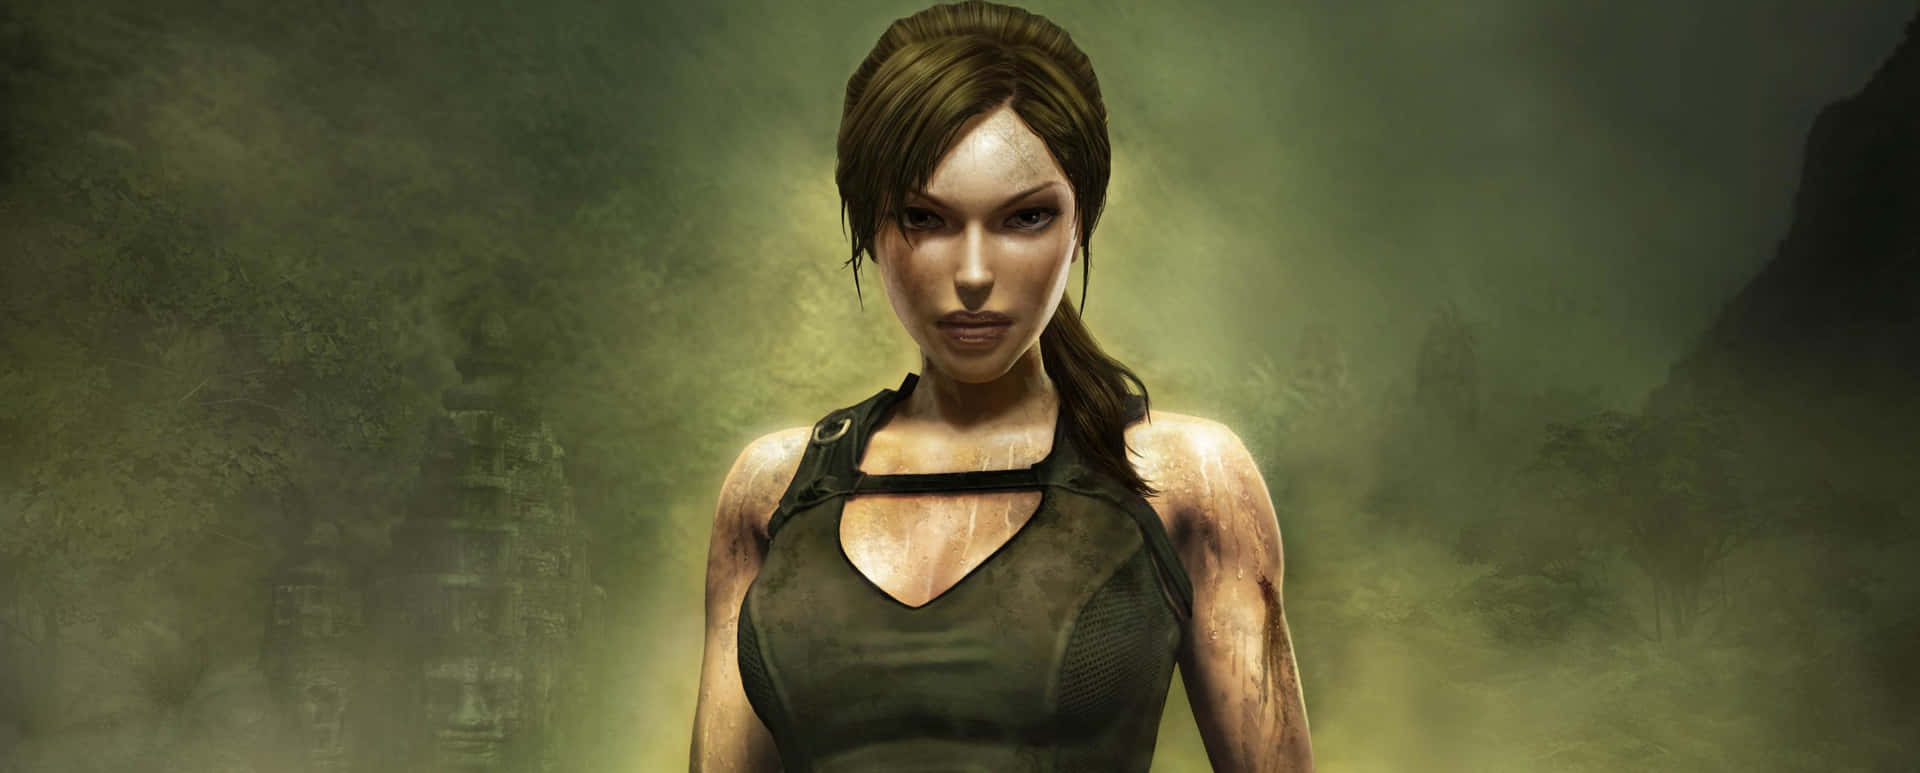 Plano De Fundo De 3440x1440p Rise Of The Tomb Raider